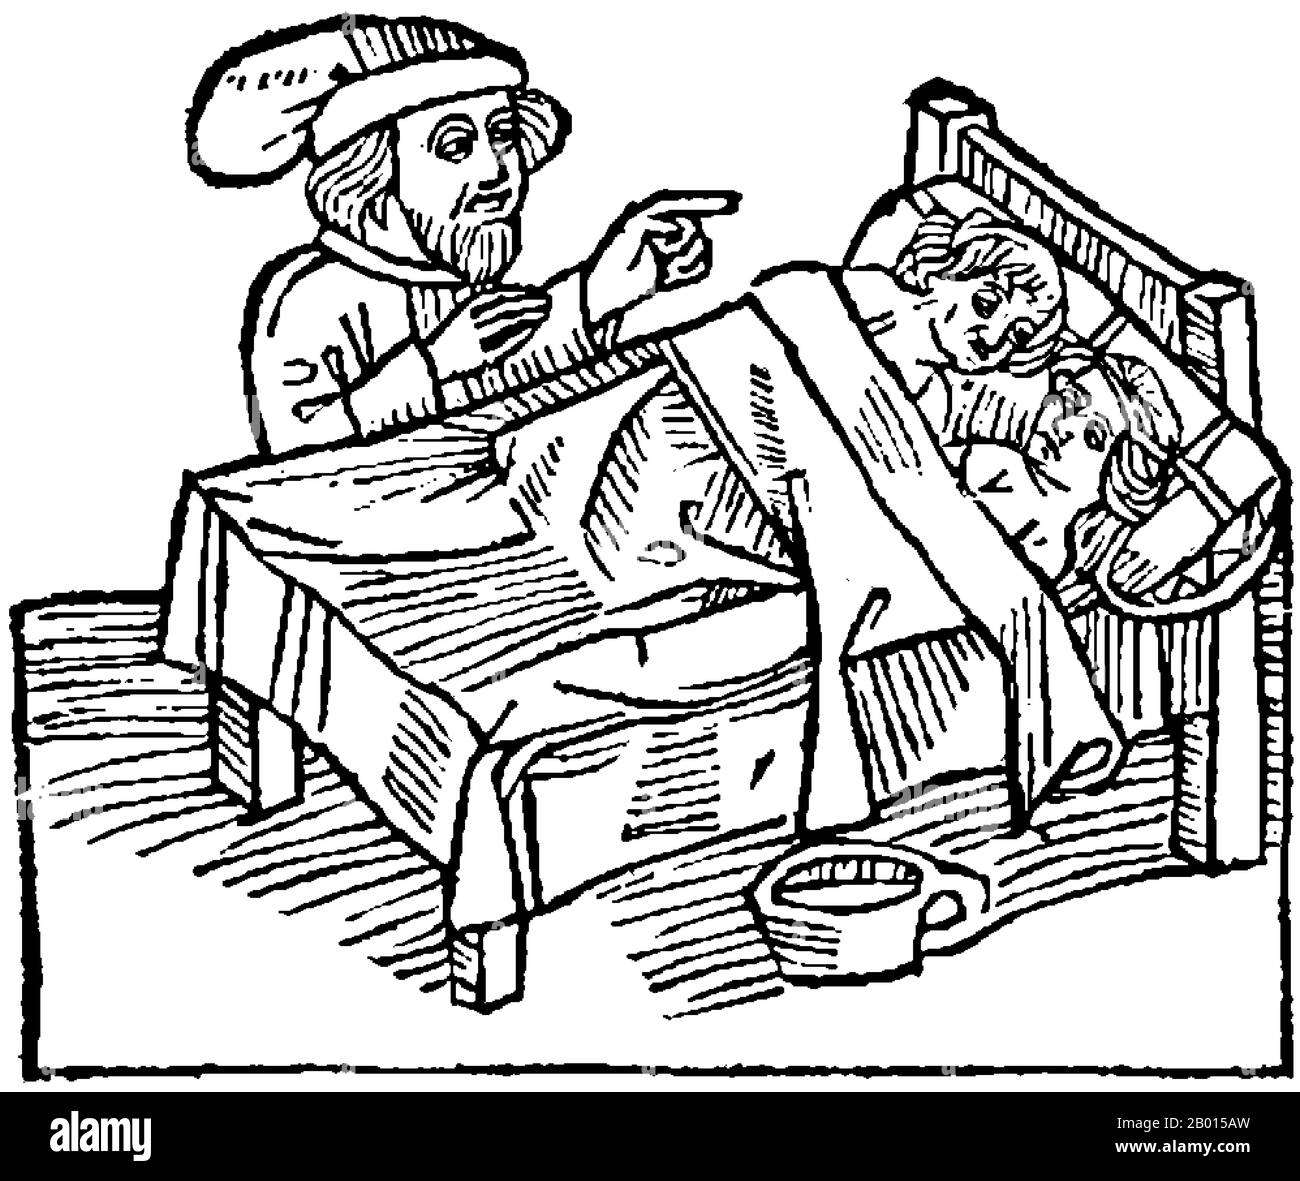 Indien: Rituelle Entjungferung, wie auf den Reisen von Sir John Mandeville  dargestellt. Illustration von Otto von Diemeringen, c. 1484. Rituelle  Entjungferung, wie auf den Reisen von Sir John Mandeville (Ausgabe 1484)  abgebildet: